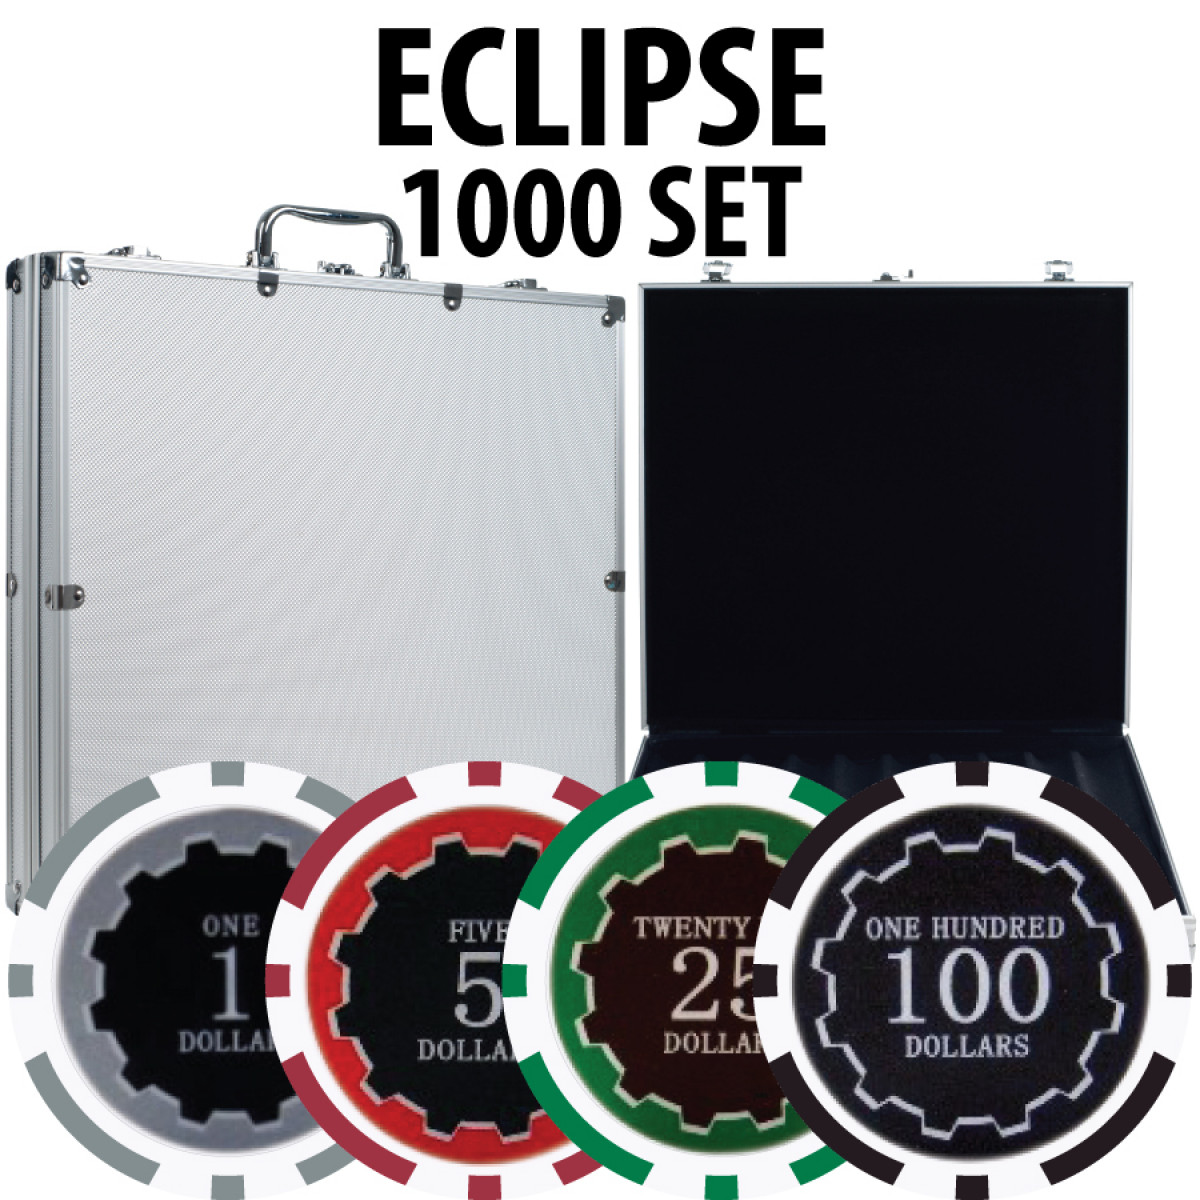 Details about   100pcs Eclipse Poker Chips $1000 